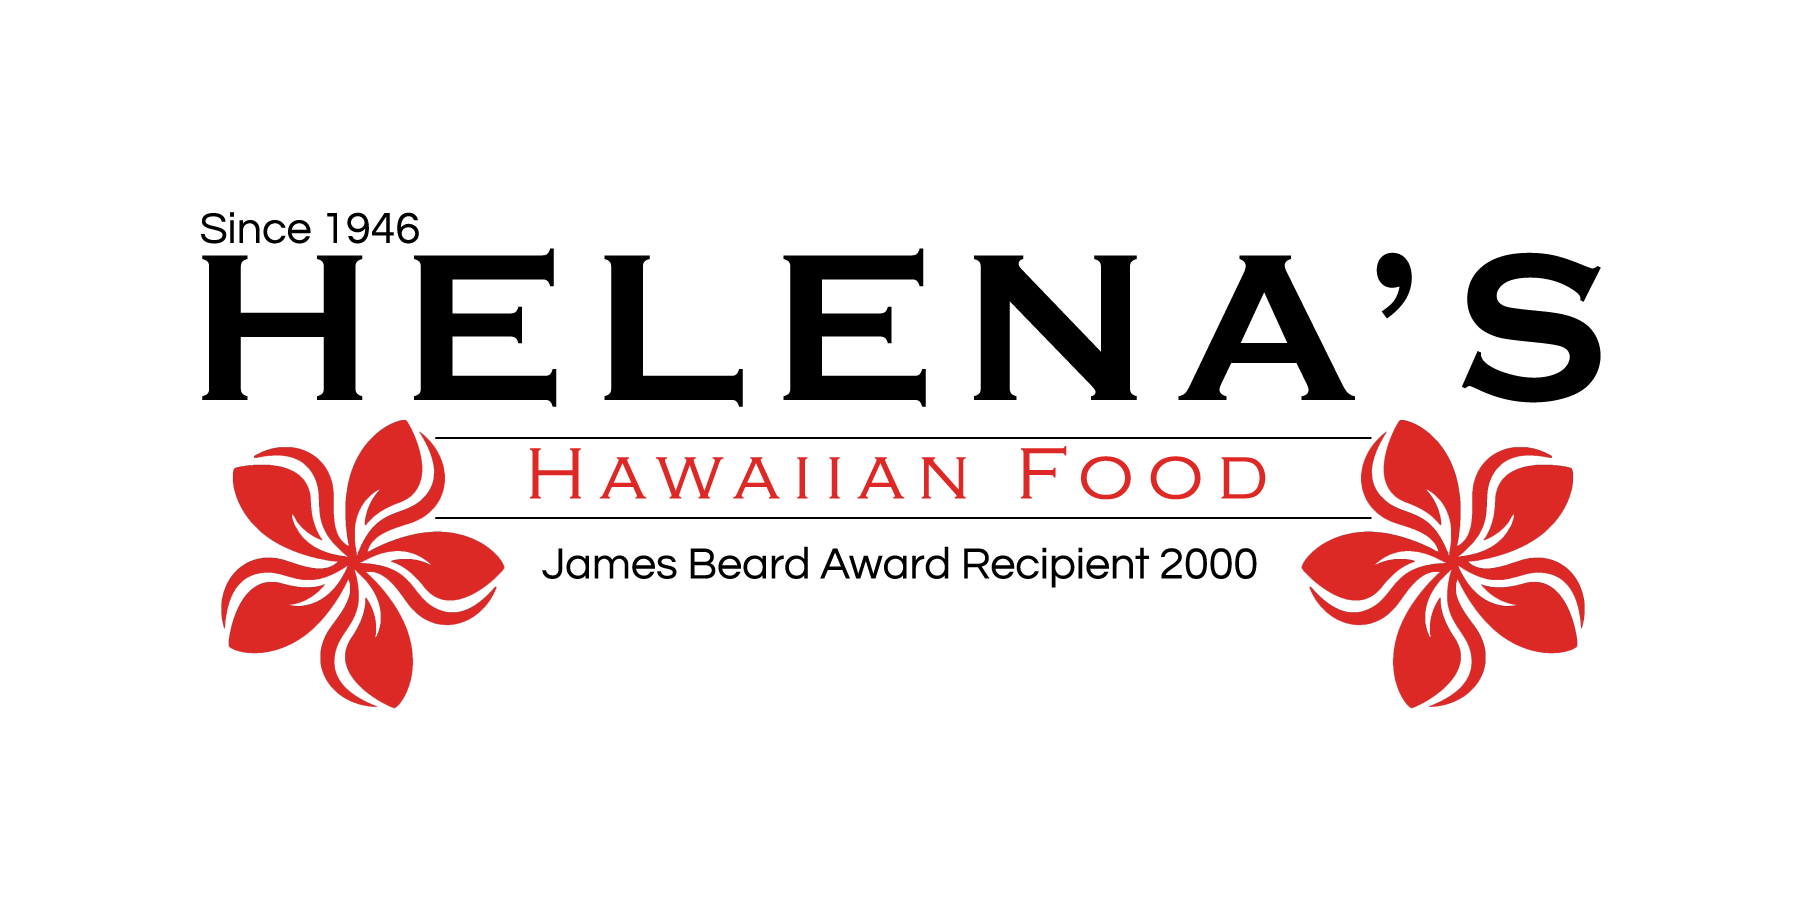 Serving great Hawaiian food since 1946!